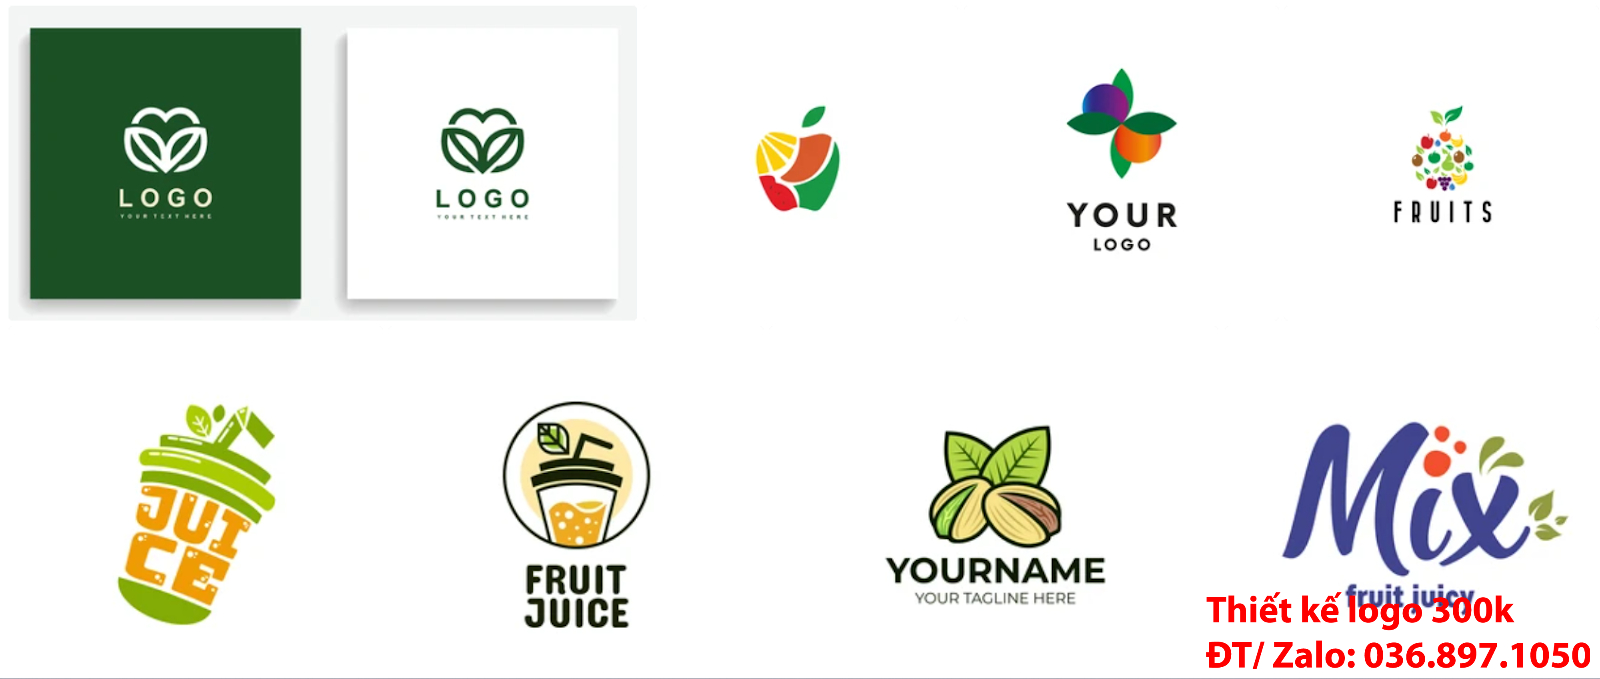 Tạo Mẫu Hình ảnh Logo trái cây PNG và Vector đẹp chuyên nghiệp với giá rẻ từ 300k đến 500k